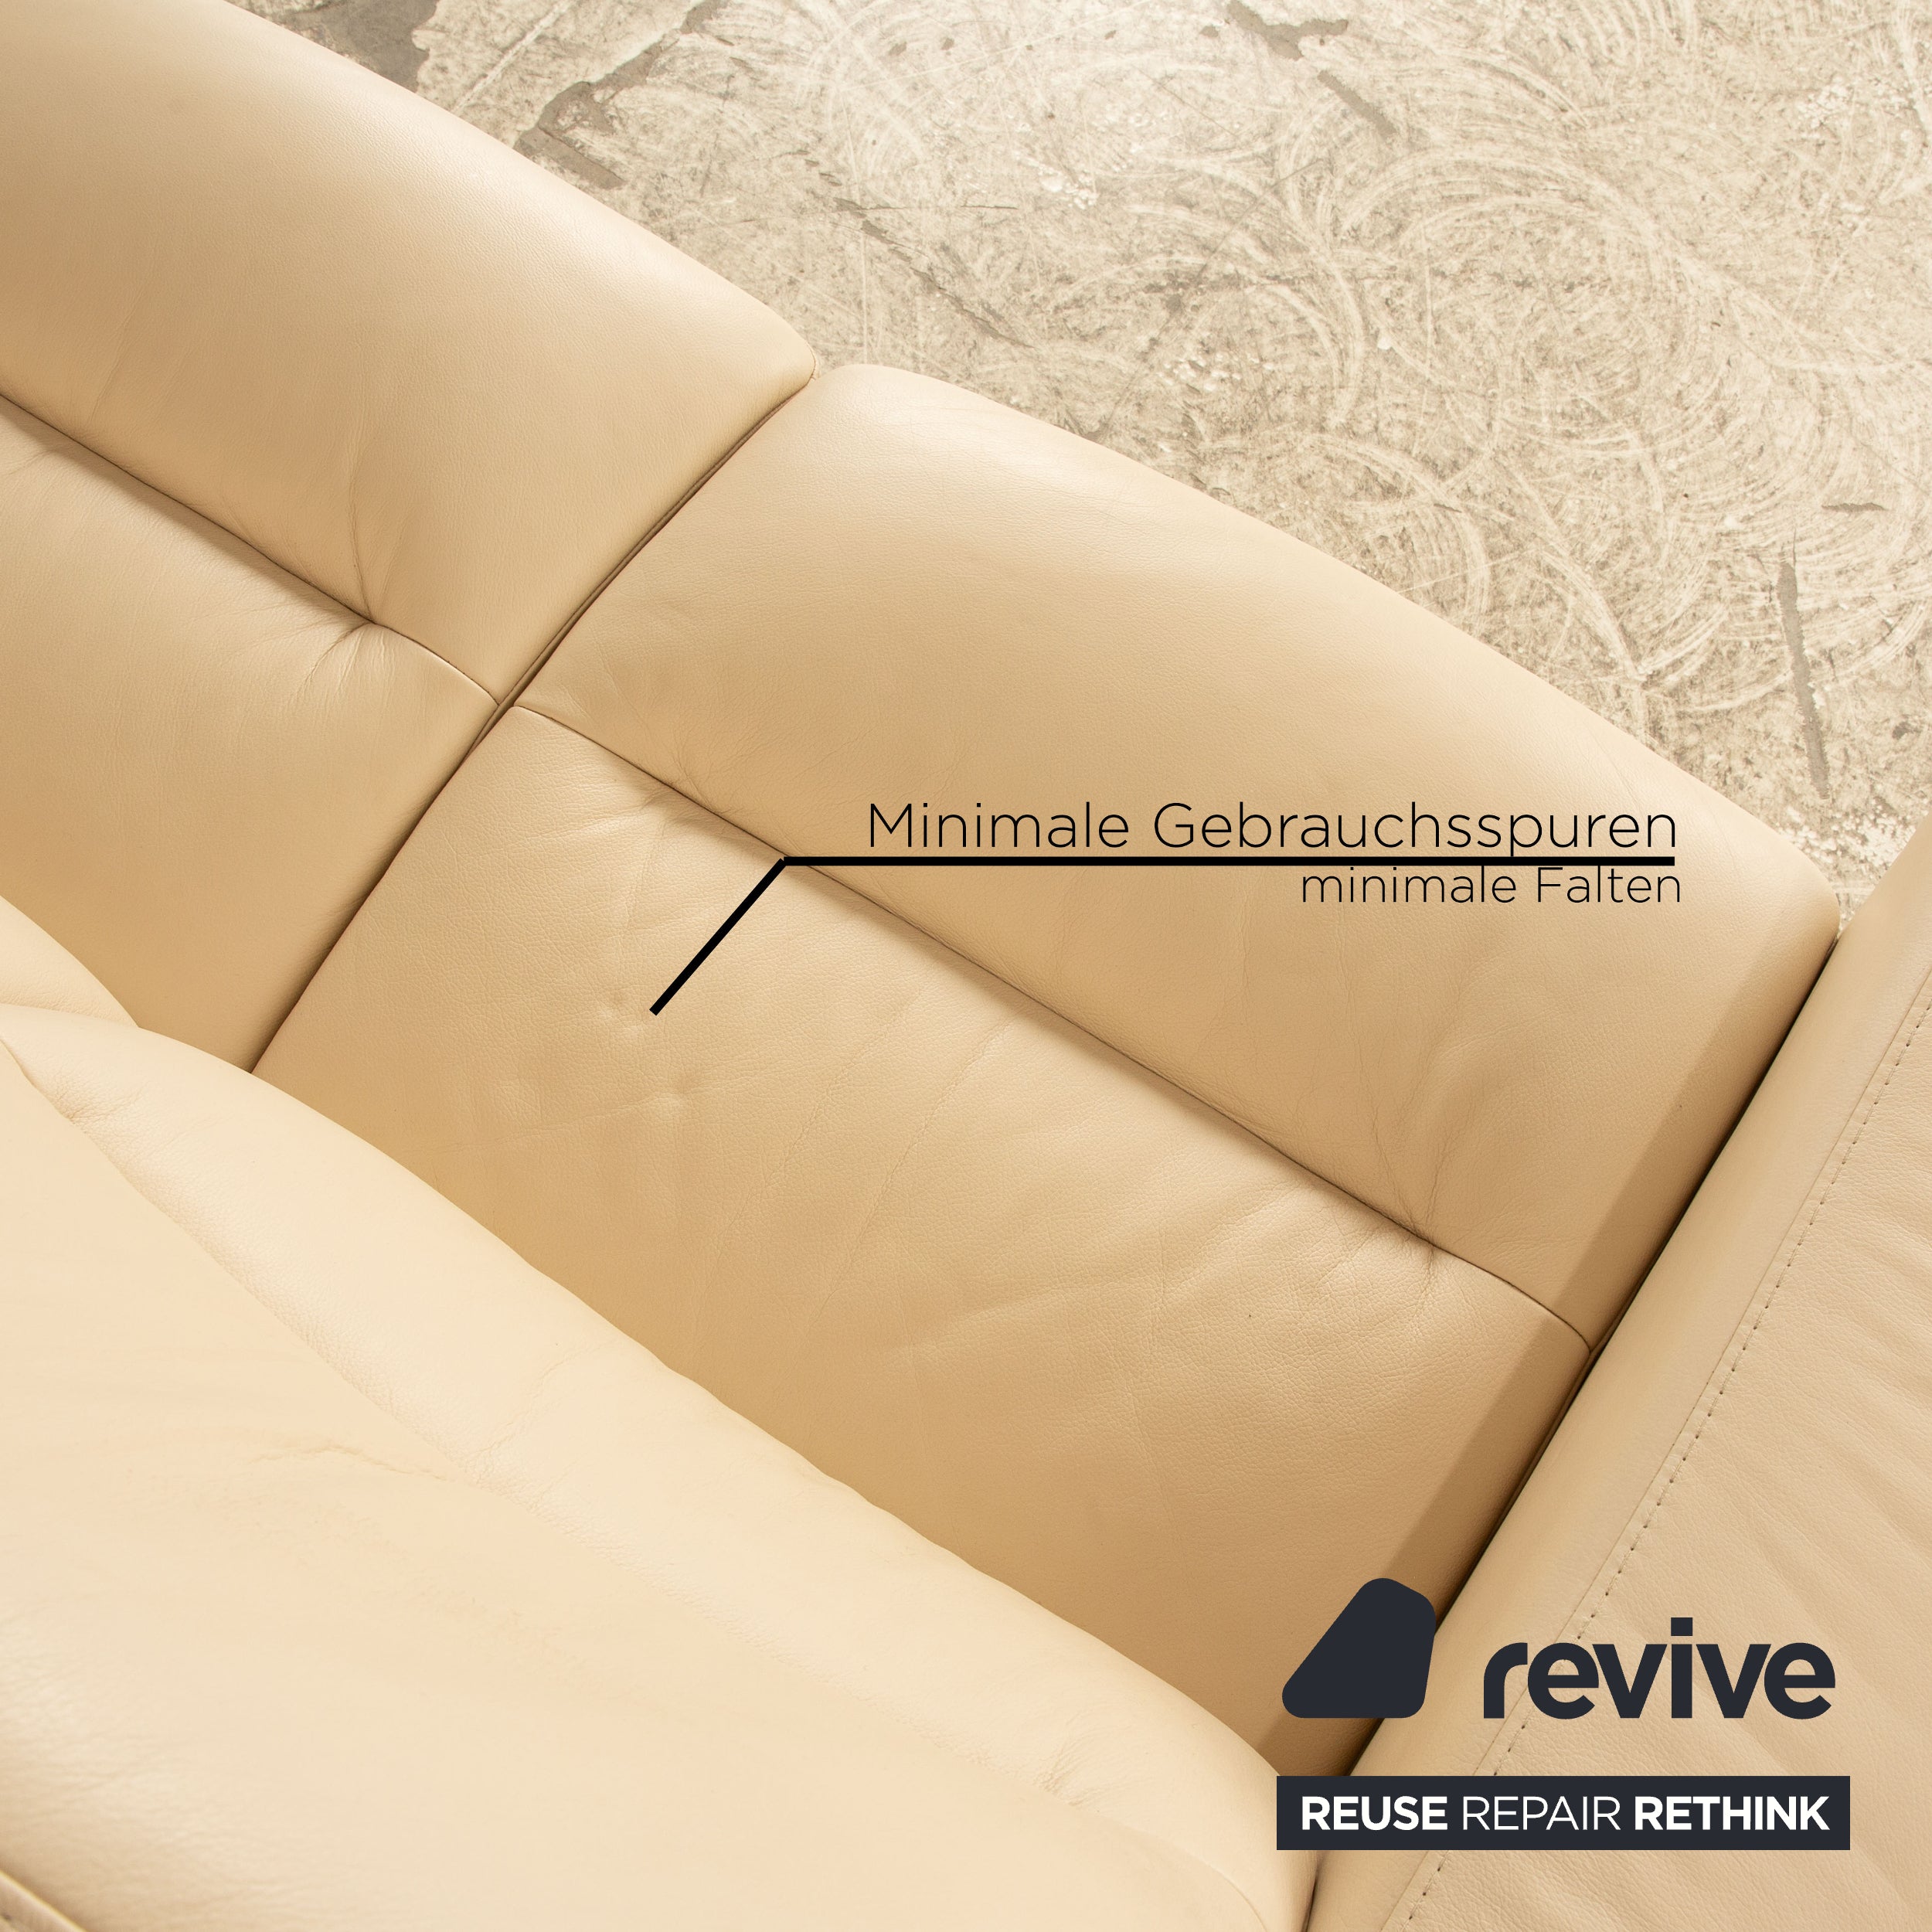 Stressless Wave Leder Dreisitzer Creme Sofa Couch manuelle Funktion